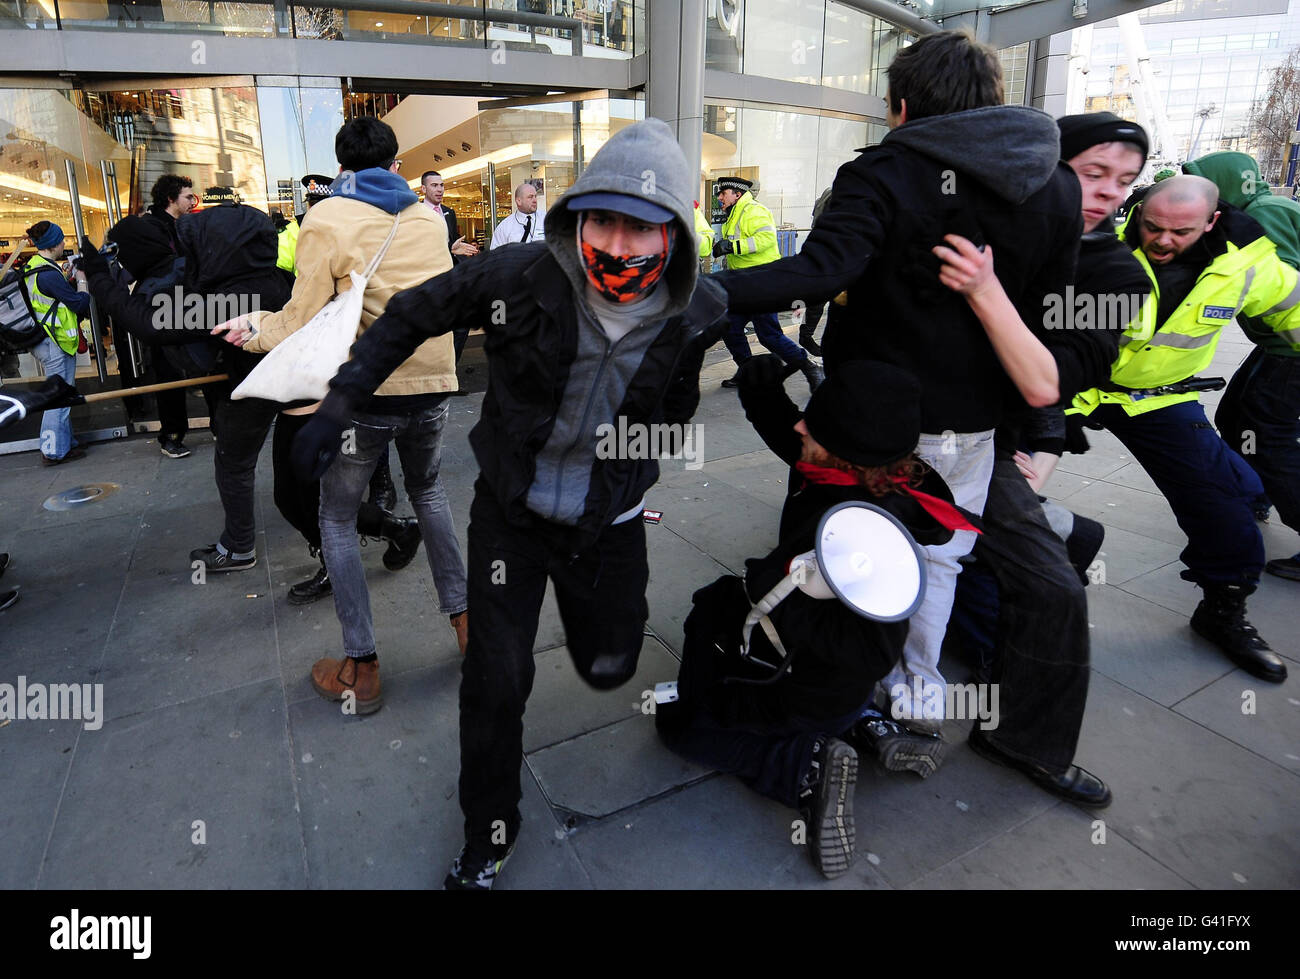 La manifestación de Manchester se vuelve violenta mientras los manifestantes intentan entrar en las tiendas del centro de la ciudad. Foto de stock